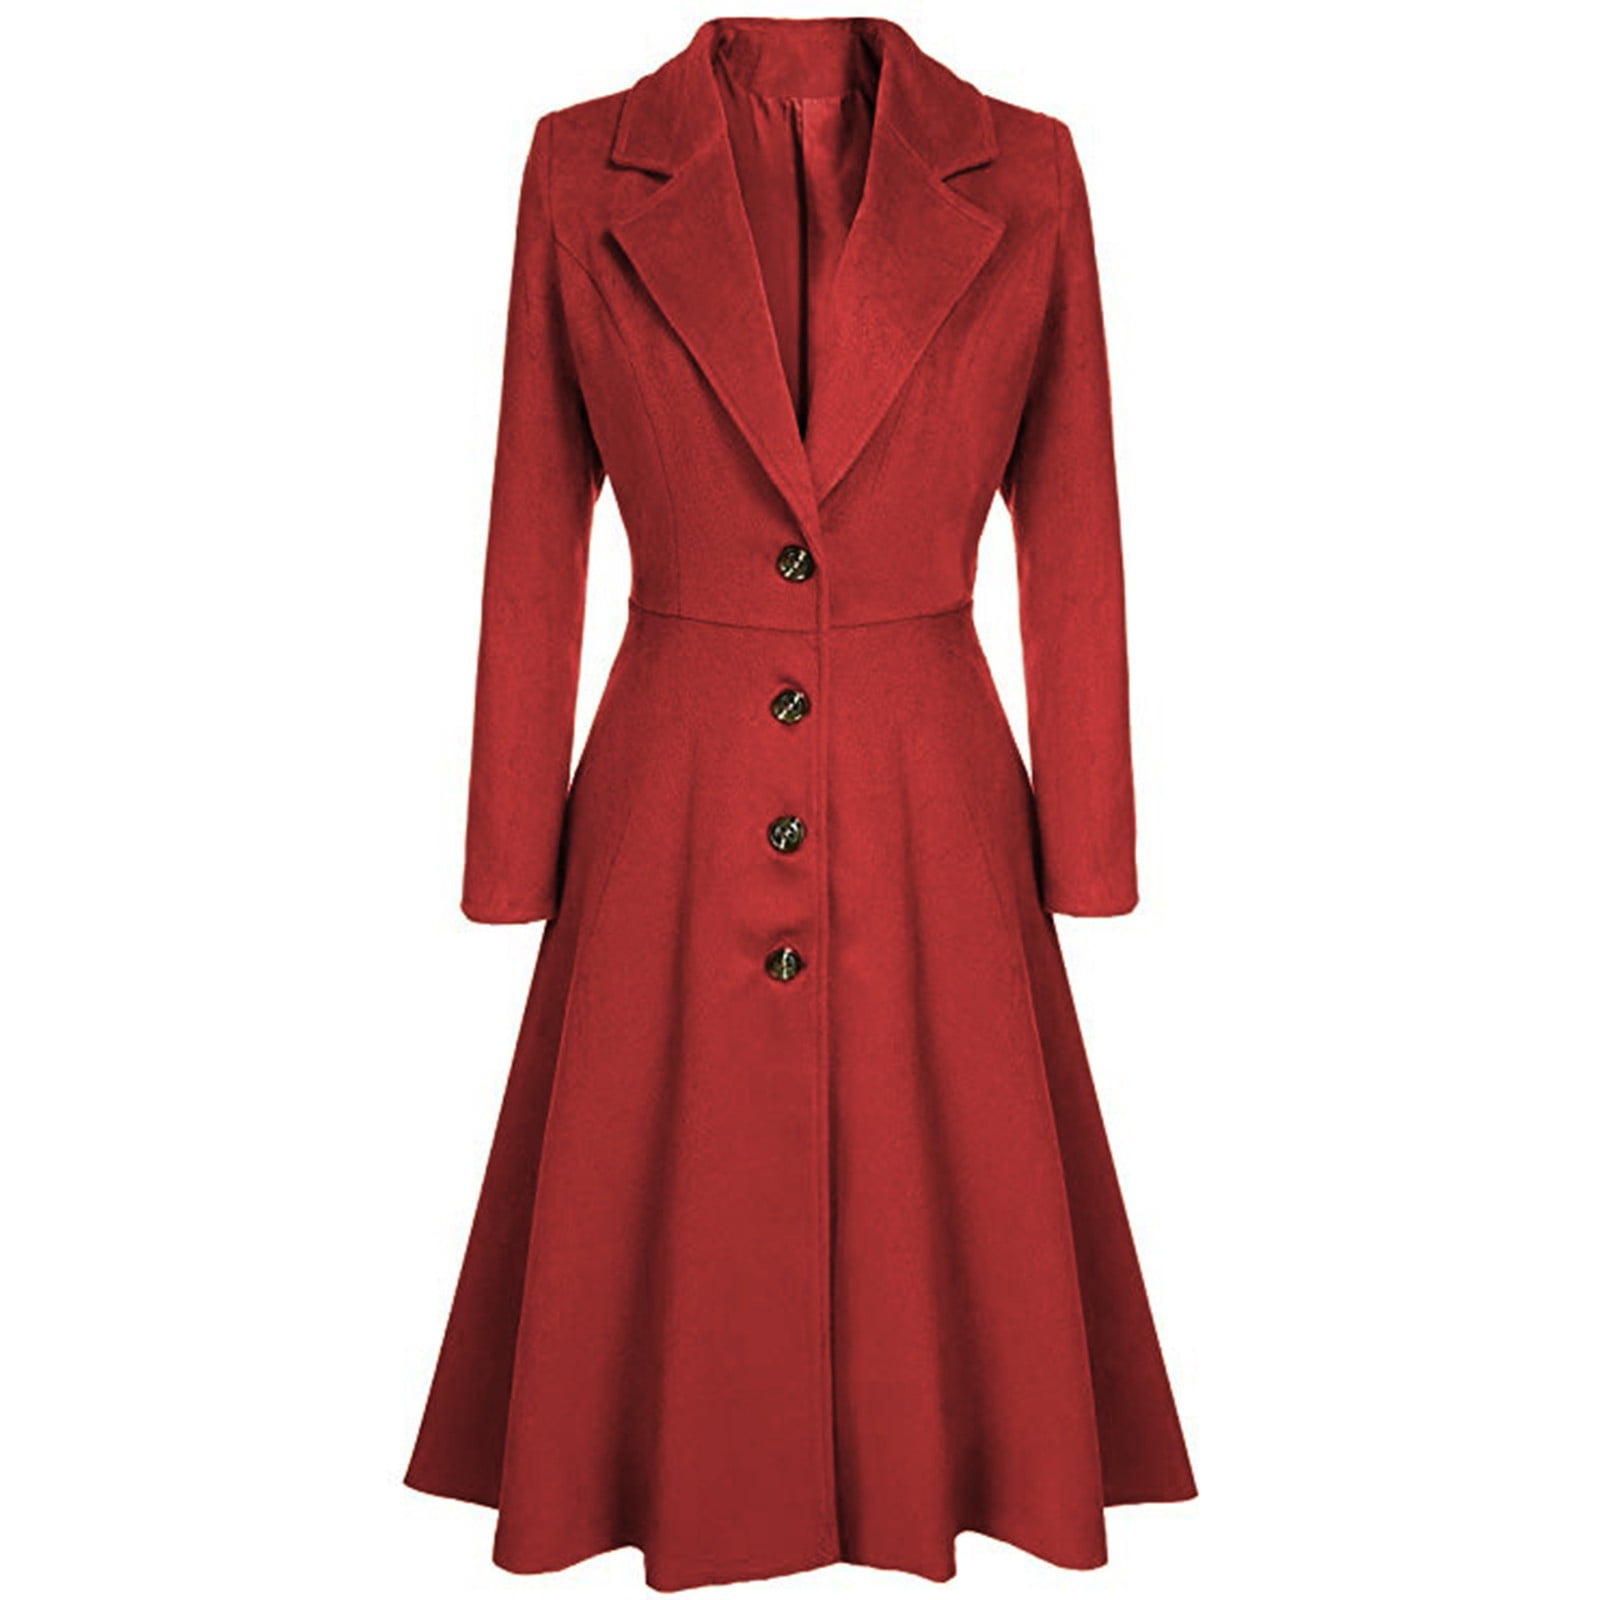 TOFOTL Women's Woolen Blend Coats Coat Lapel Wrap Swing Flared Winter ...